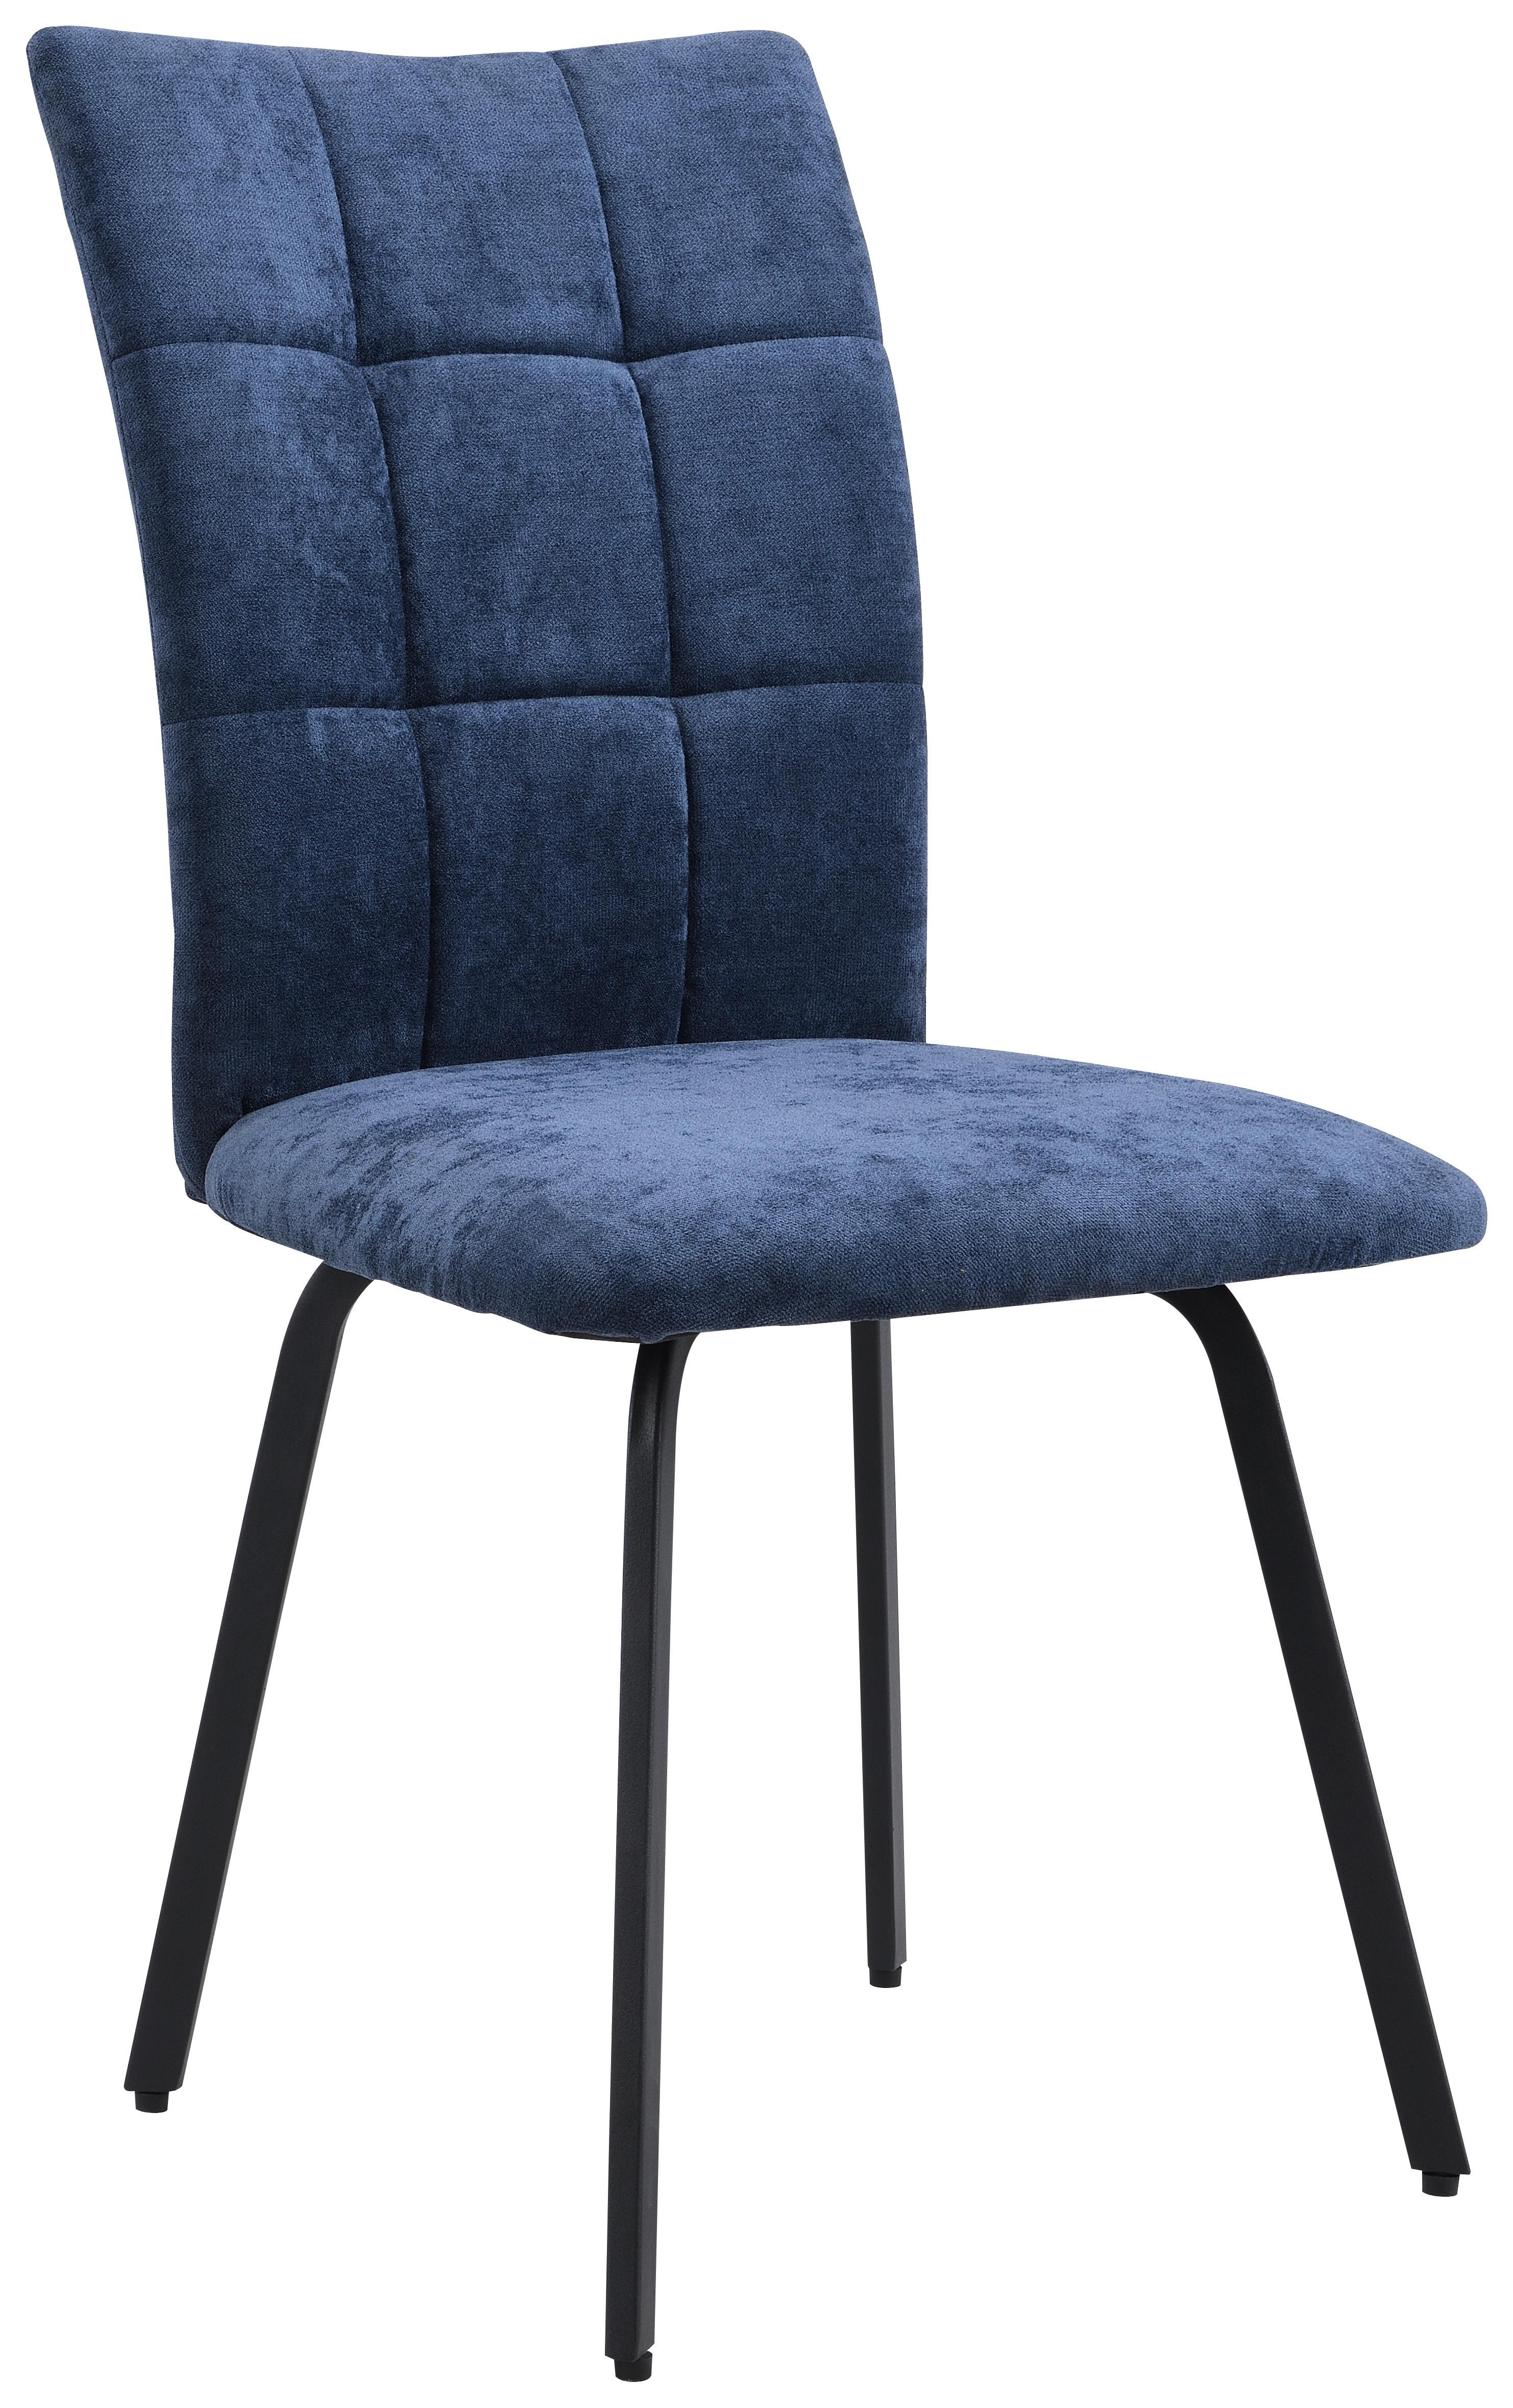 Četveronožna Stolica Ostia - tamno plava/crna, Konventionell, metal/tekstil (46/94/63cm) - Modern Living